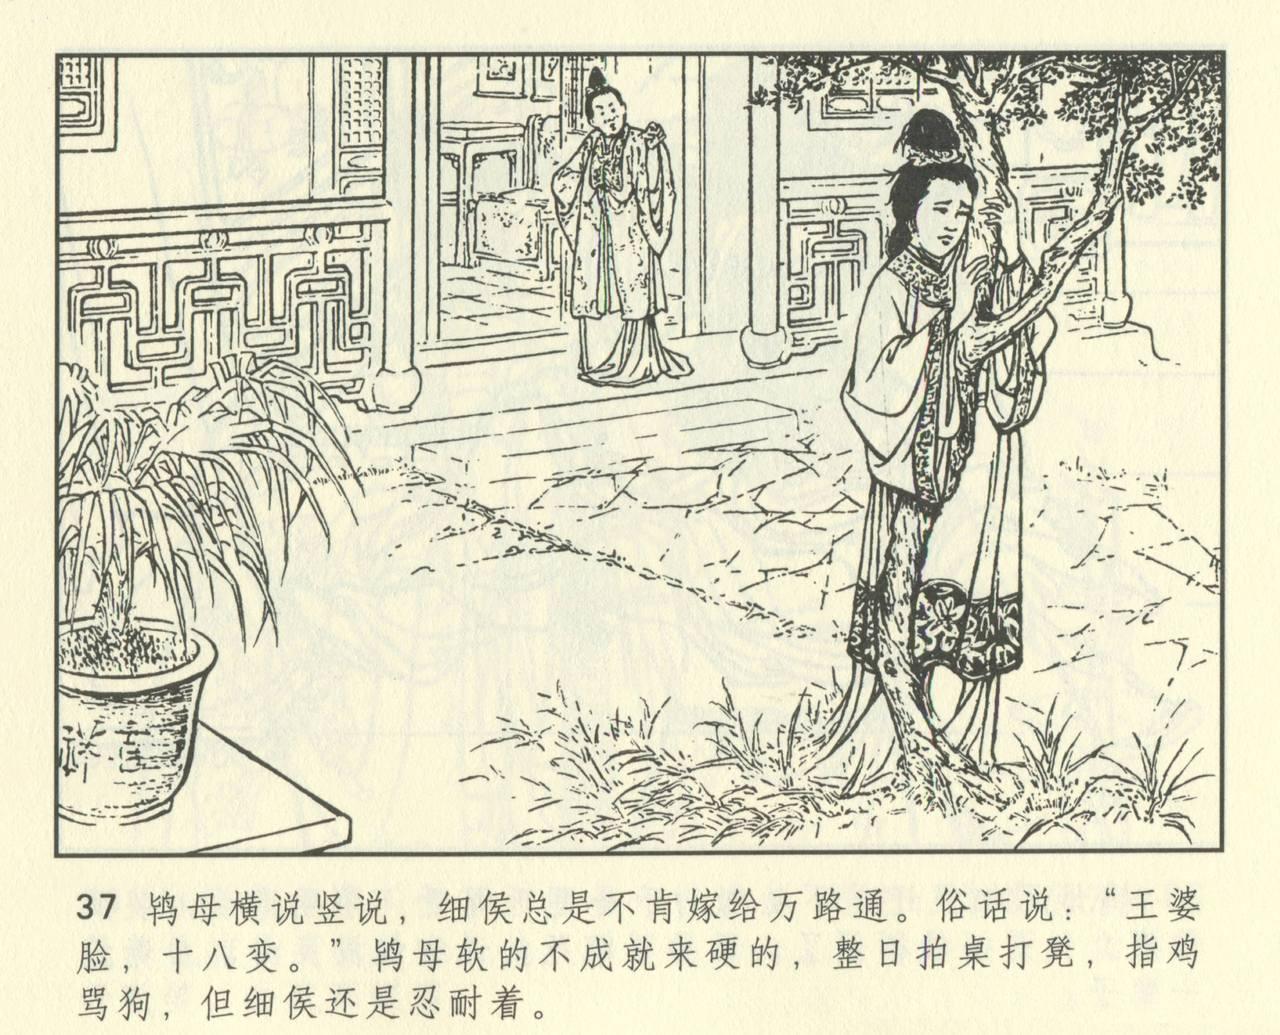 聊斋志异 张玮等绘 天津人民美术出版社 卷二十一 ~ 三十 448